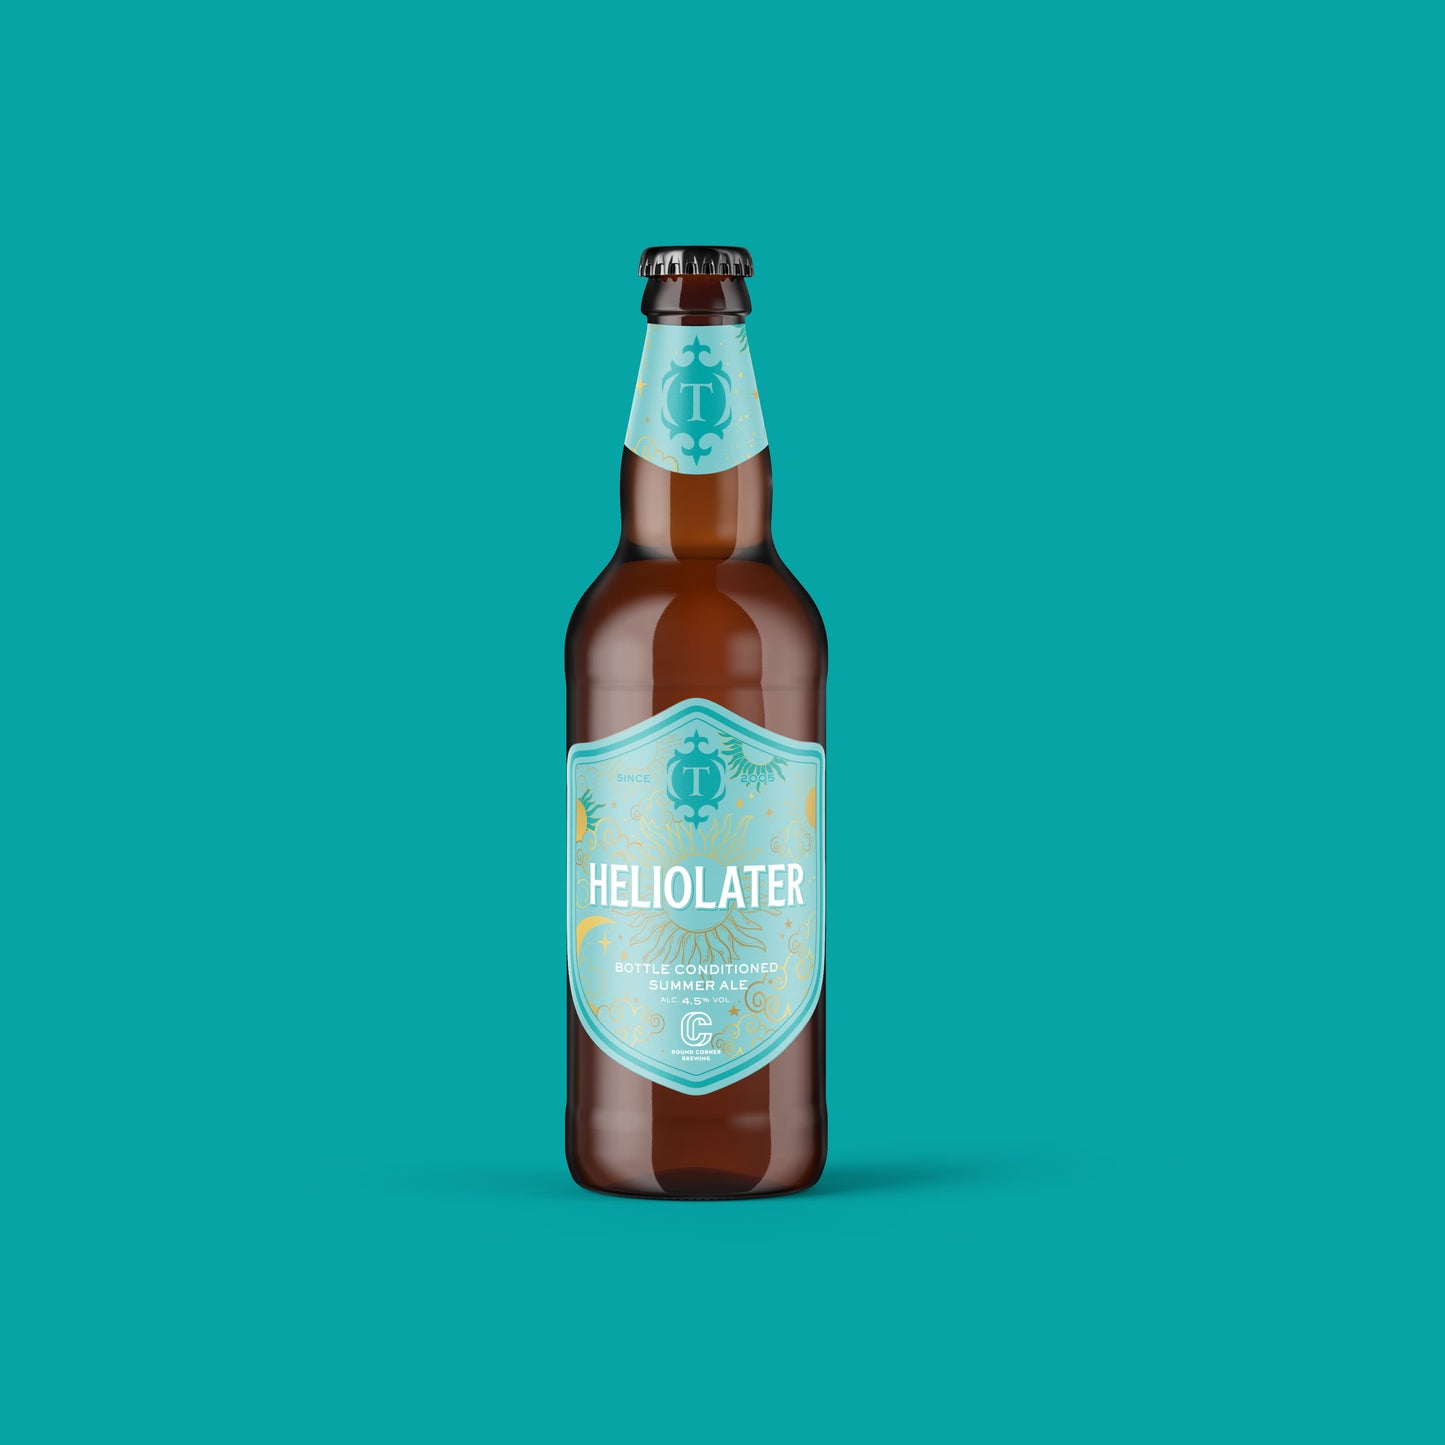 Heliolater, 4.5% Summer Ale 500ml bottle Beer - Single Bottle Thornbridge